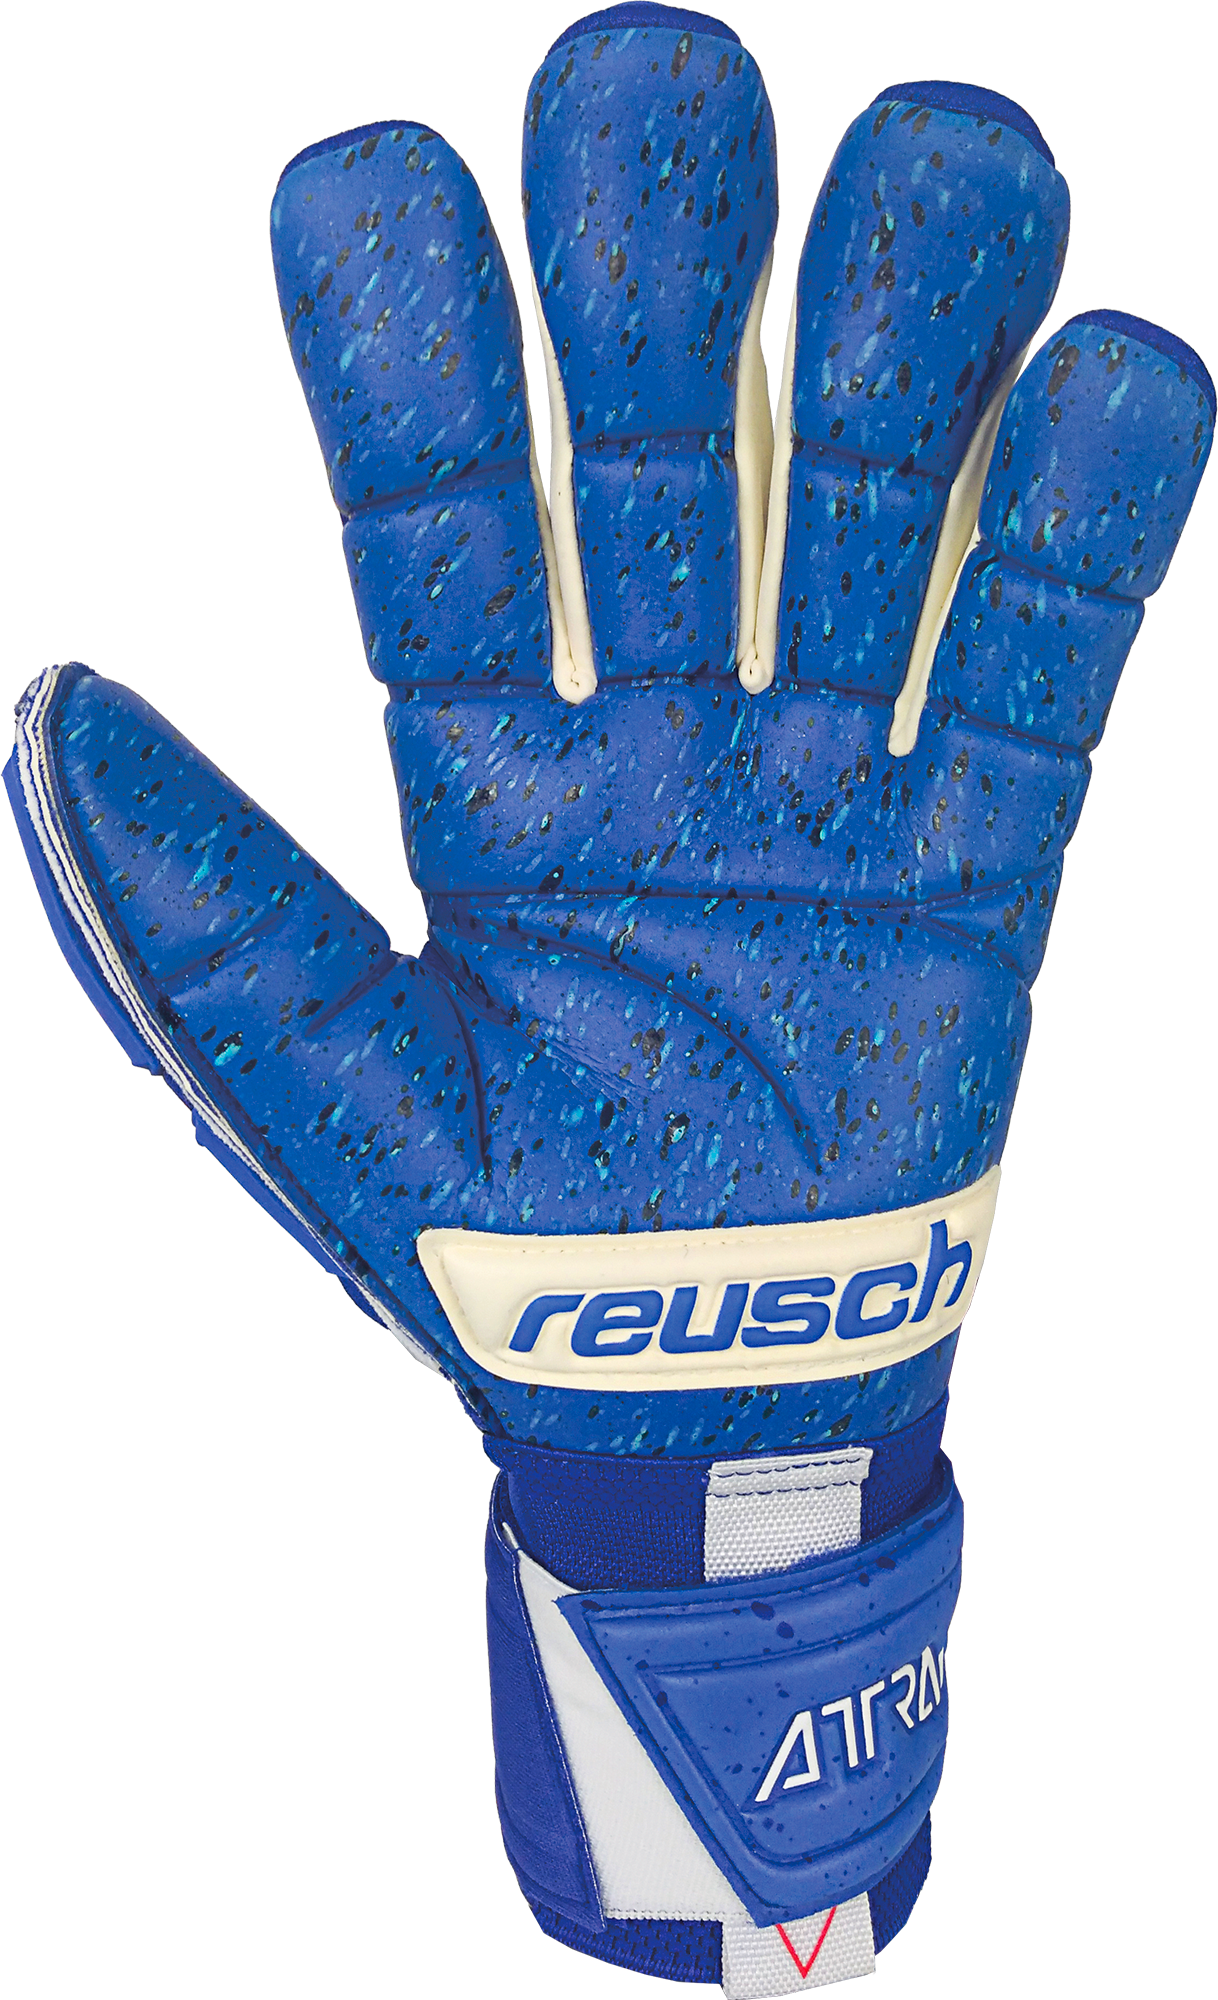 Fusion Goalkeeper Blue Reusch Soccer Freegel – 5170995 Gloves Zone Attrakt Goaliator